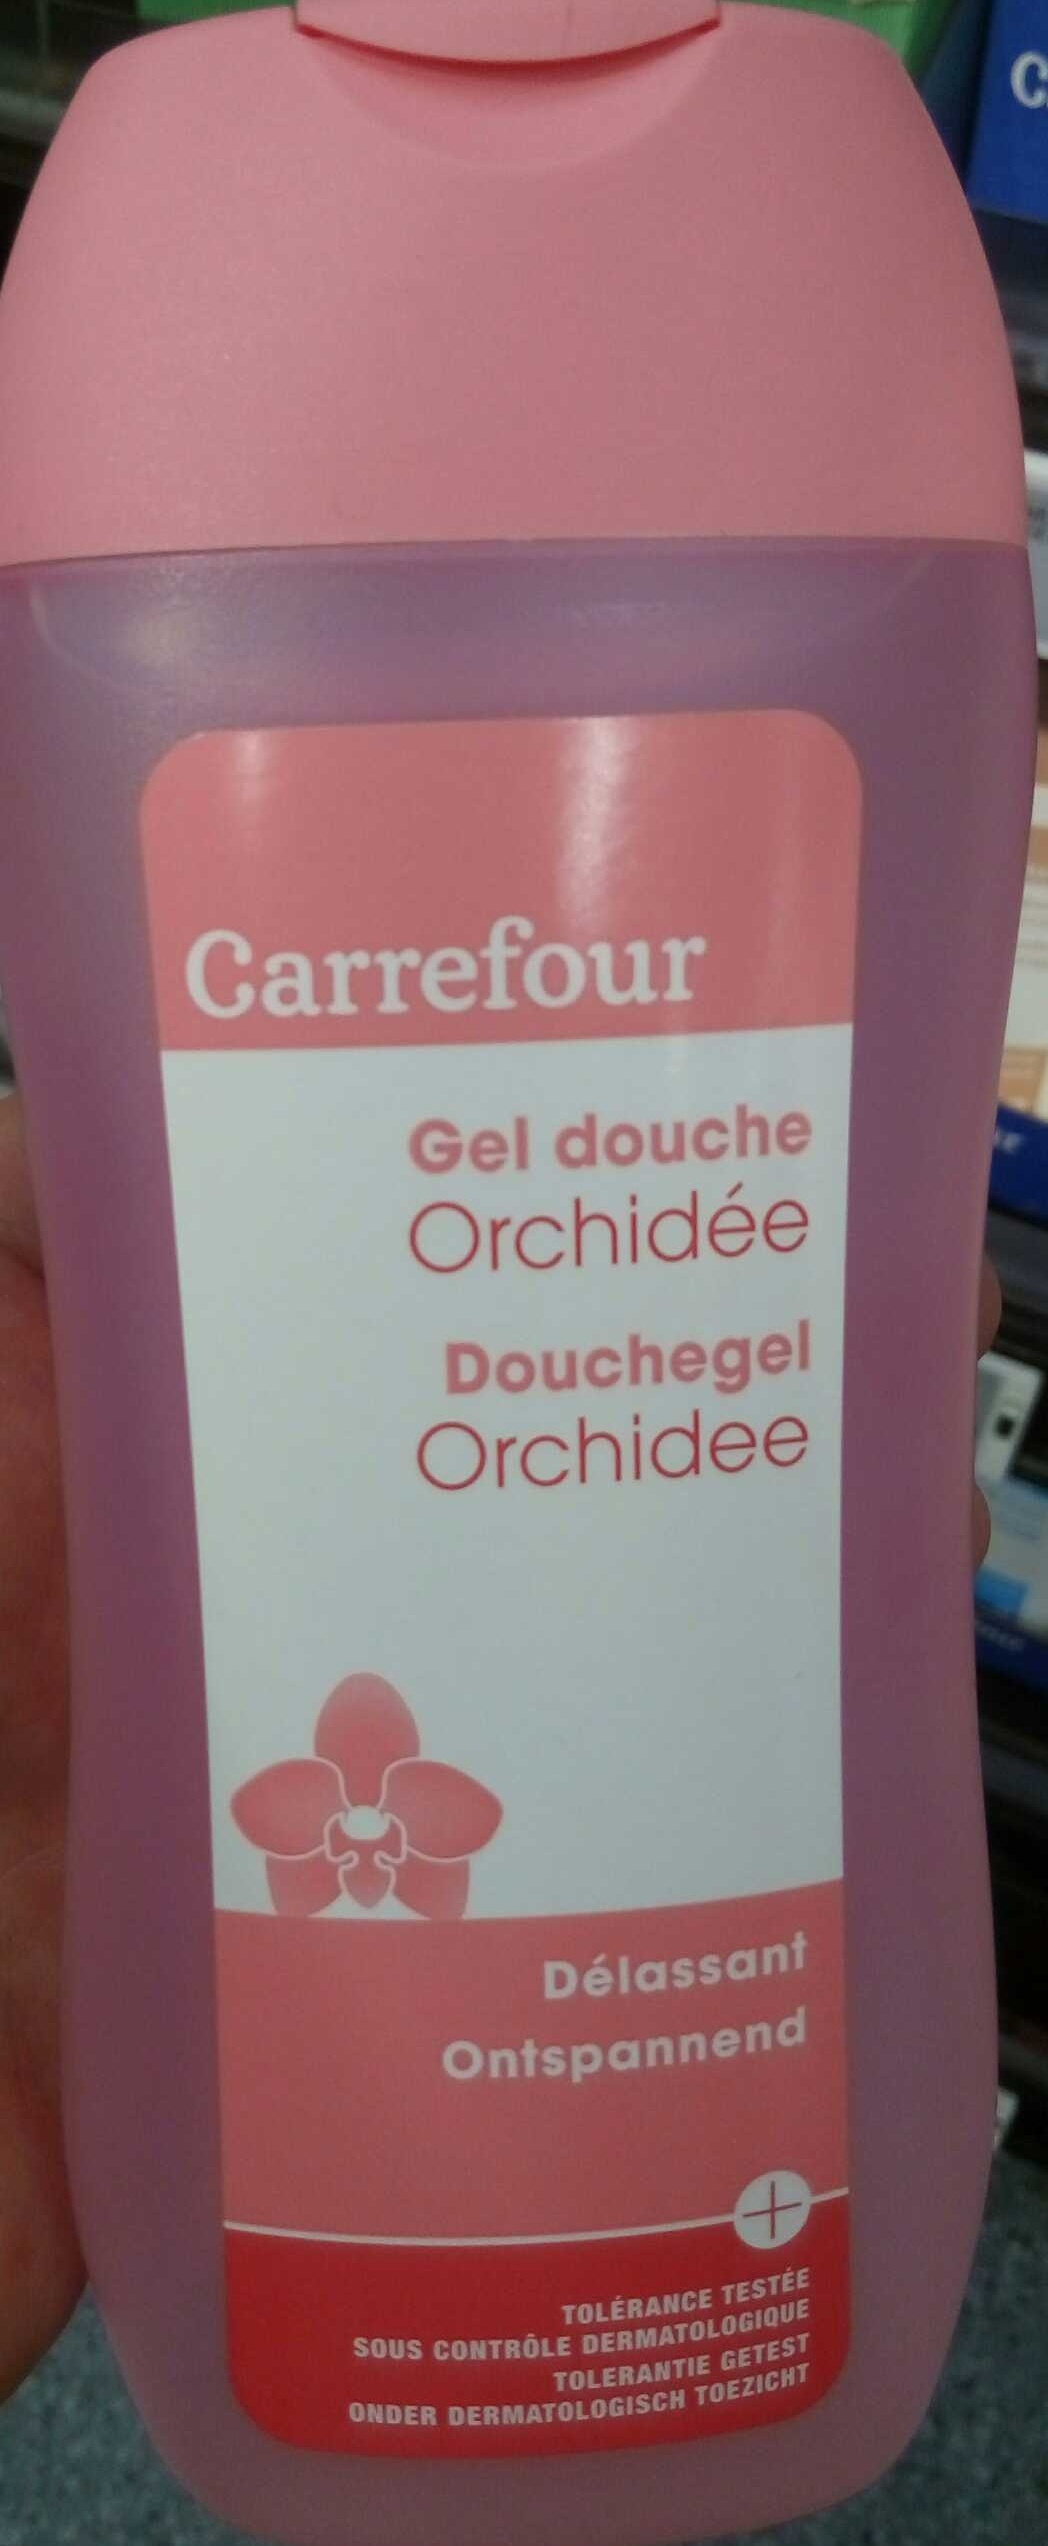 Gel douche Orchidée délassant - Product - fr